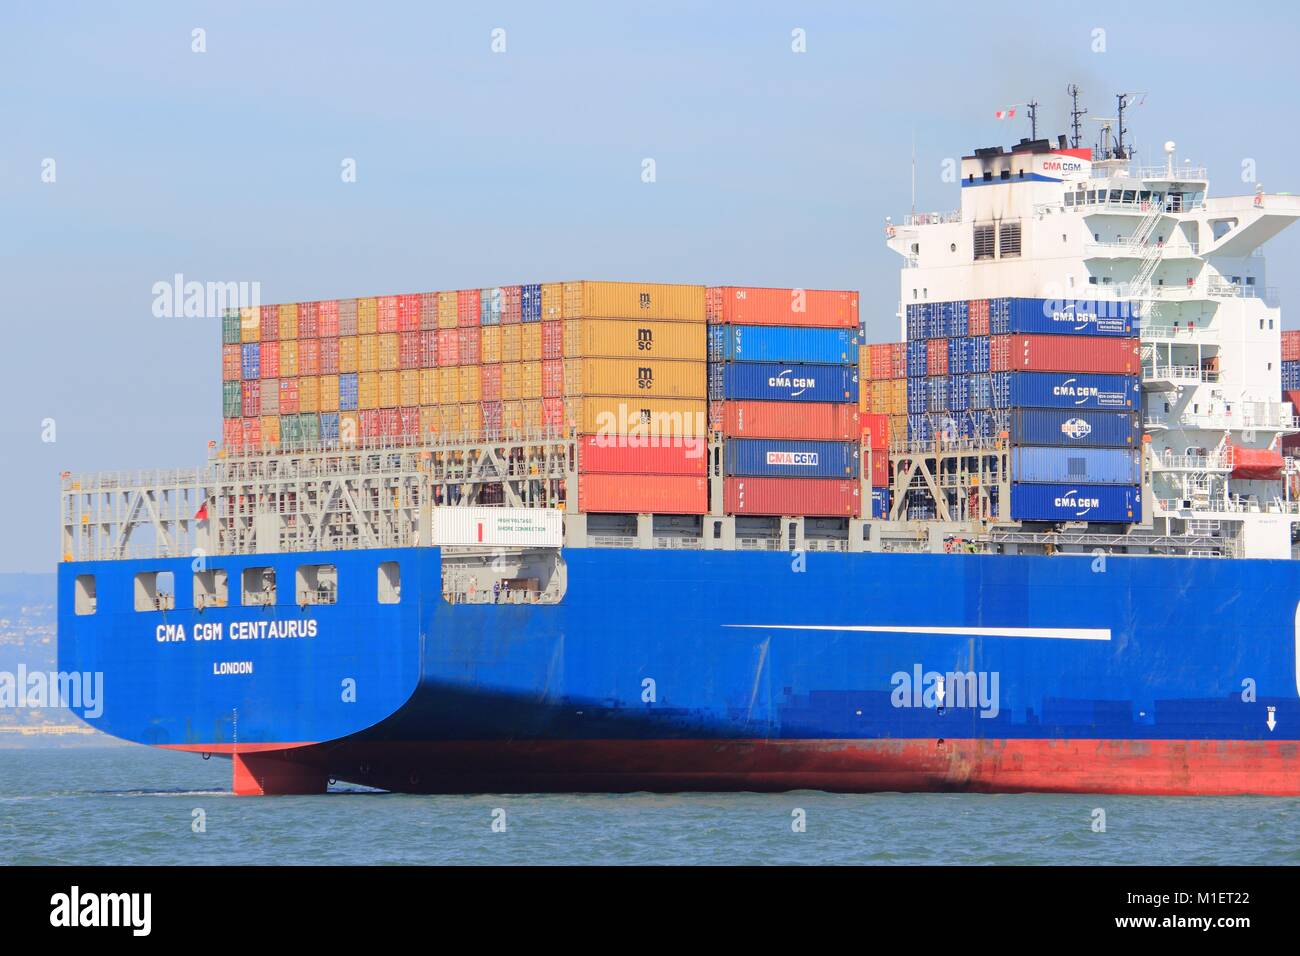 SAN FRANCISCO, USA - 8 avril 2014 CMA CGM : Centaurius container ship voiles dans la baie de San Francisco. CMA CGM est le 3ème plus grand réservoir Shipping Company Banque D'Images